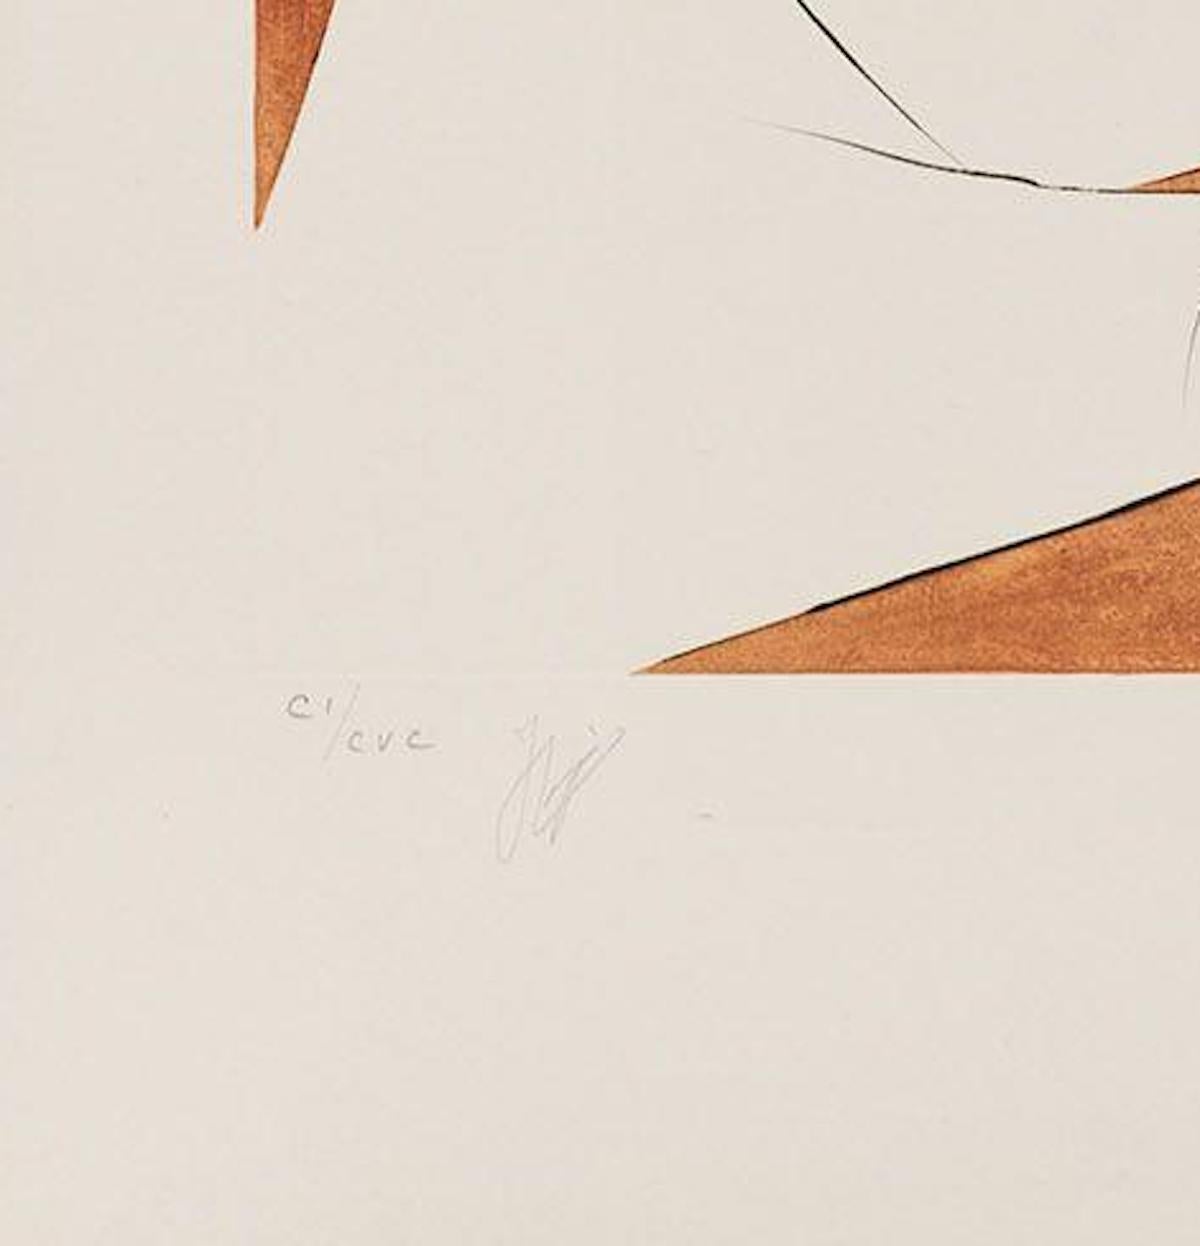 Papillons de l’Anti-Matière - Original Etching by Salvador Dalì - 1974 - Print by Salvador Dalí